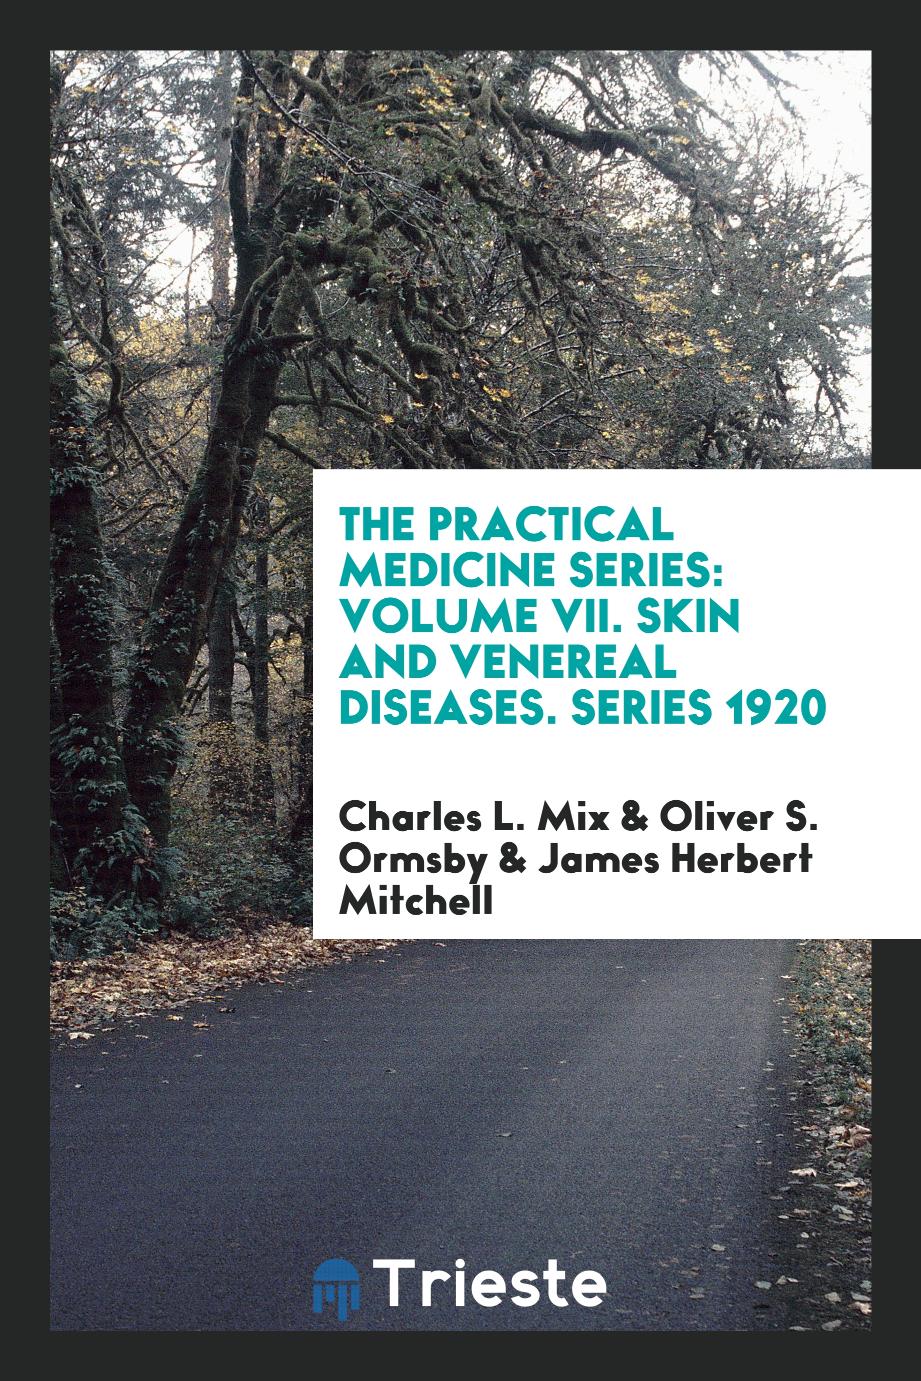 The Practical Medicine Series: Volume VII. Skin and Venereal Diseases. Series 1920